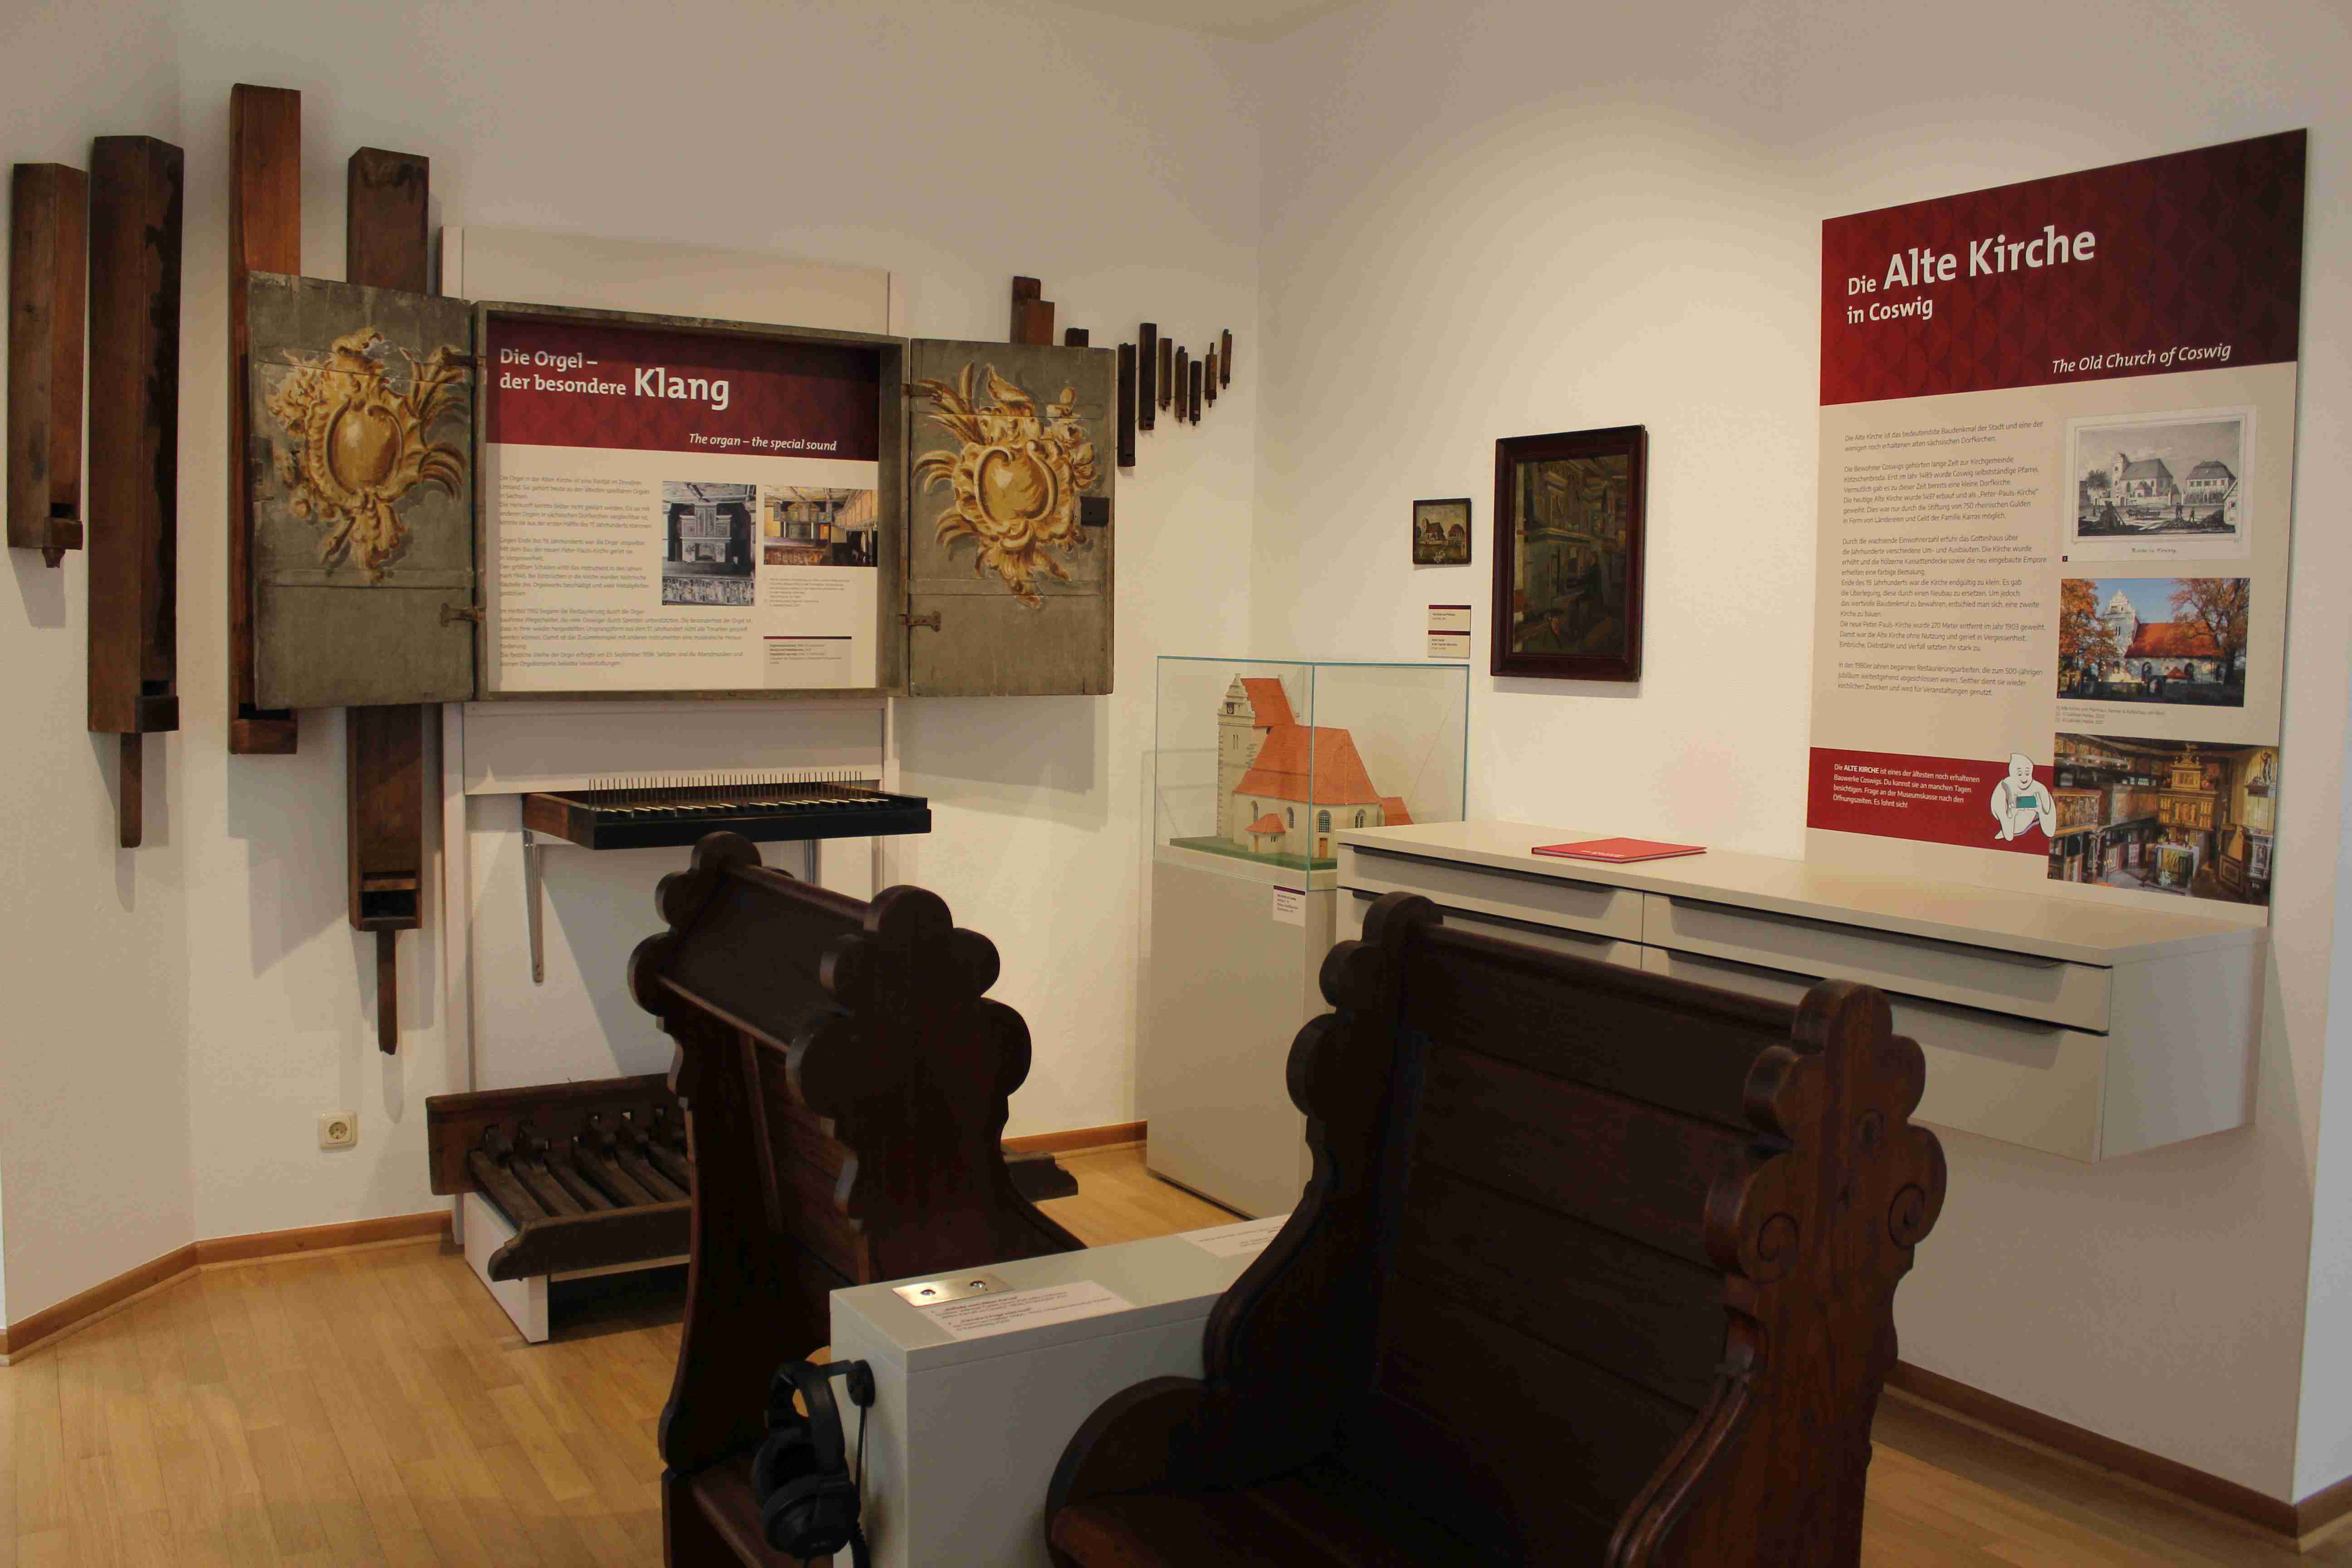 Das Foto zeigt neben historischem Kirchengestühl mehrere an der Wand angebrachte historische Orgelpfeifen, daneben Wandtexte, ein Schubladen-Element sowie eine Eck-Vitrine mit einem Modell der Coswiger Kirche.